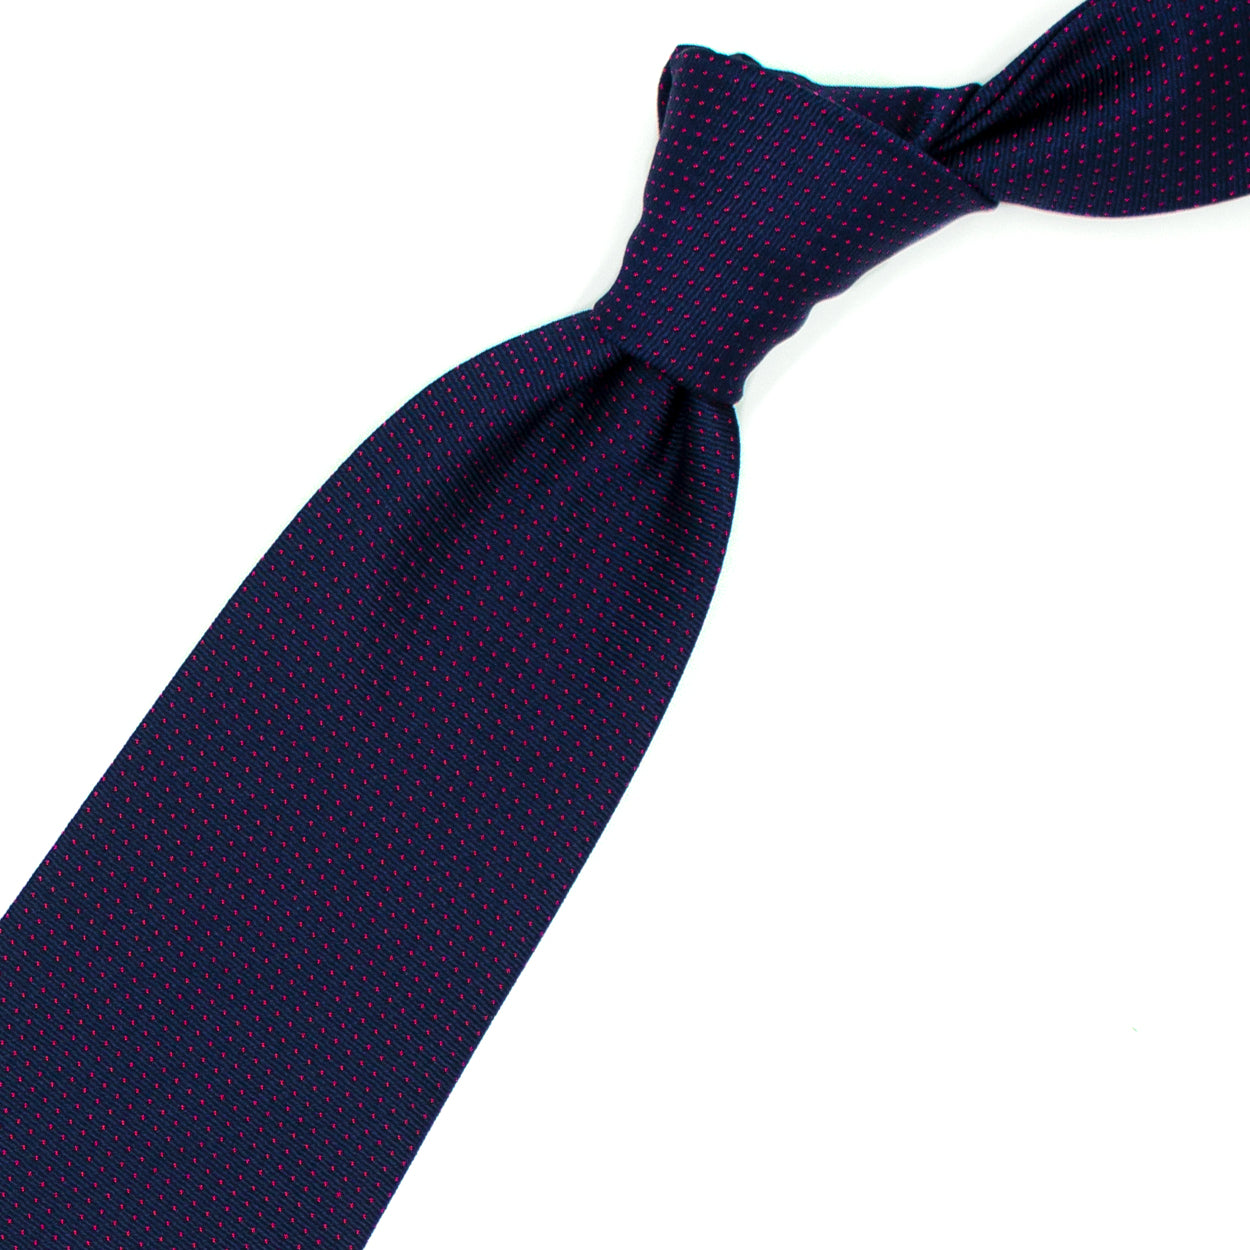 Blue tie with red stilettos